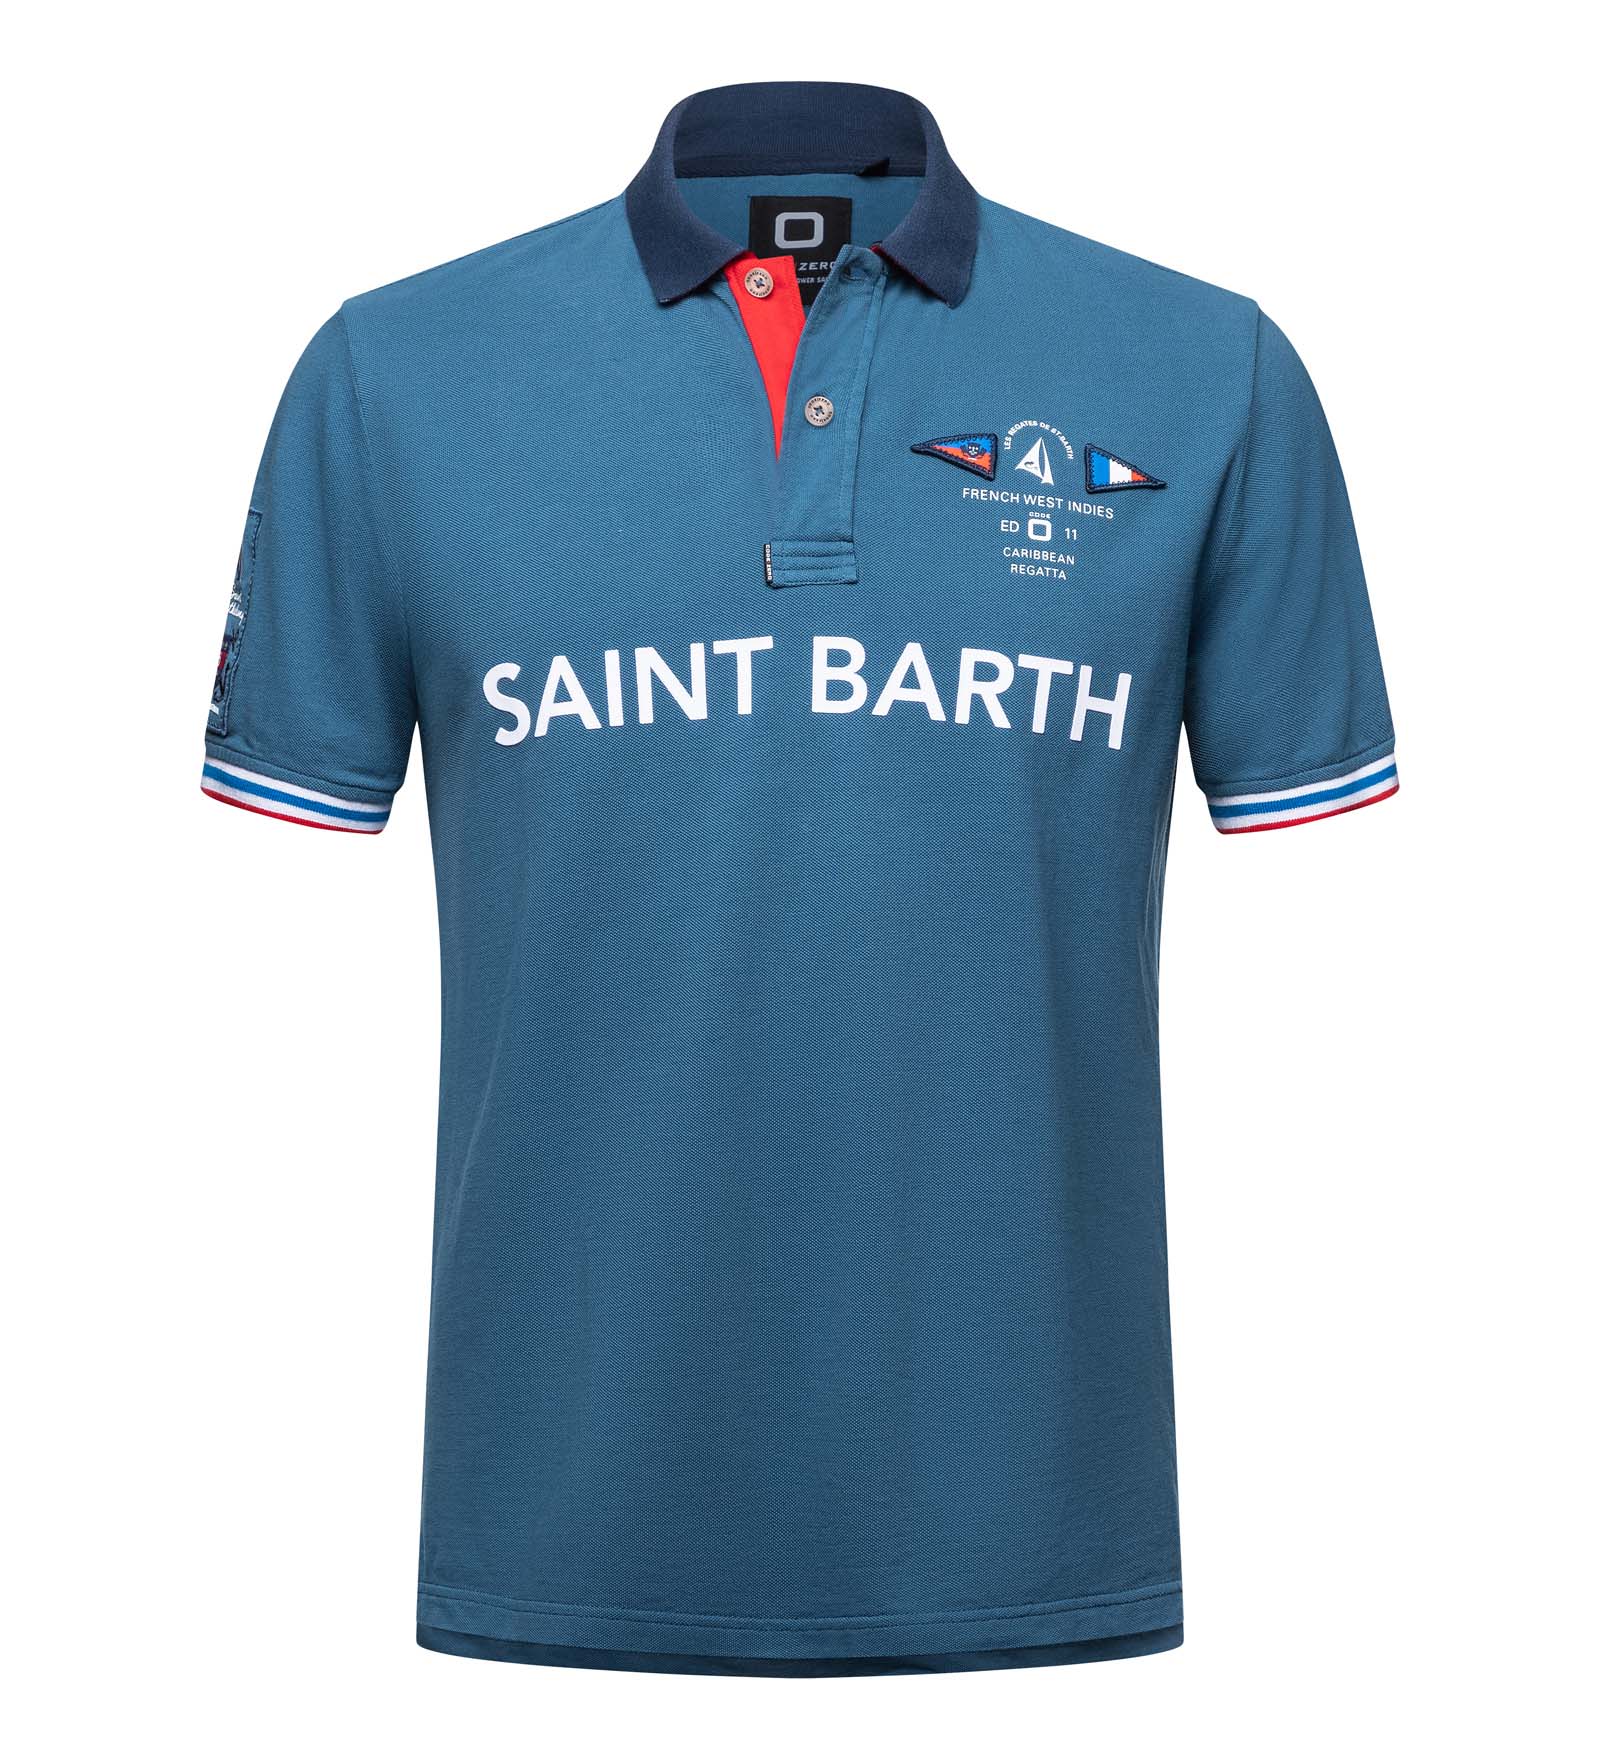 St. Barth Polo Shirt blue